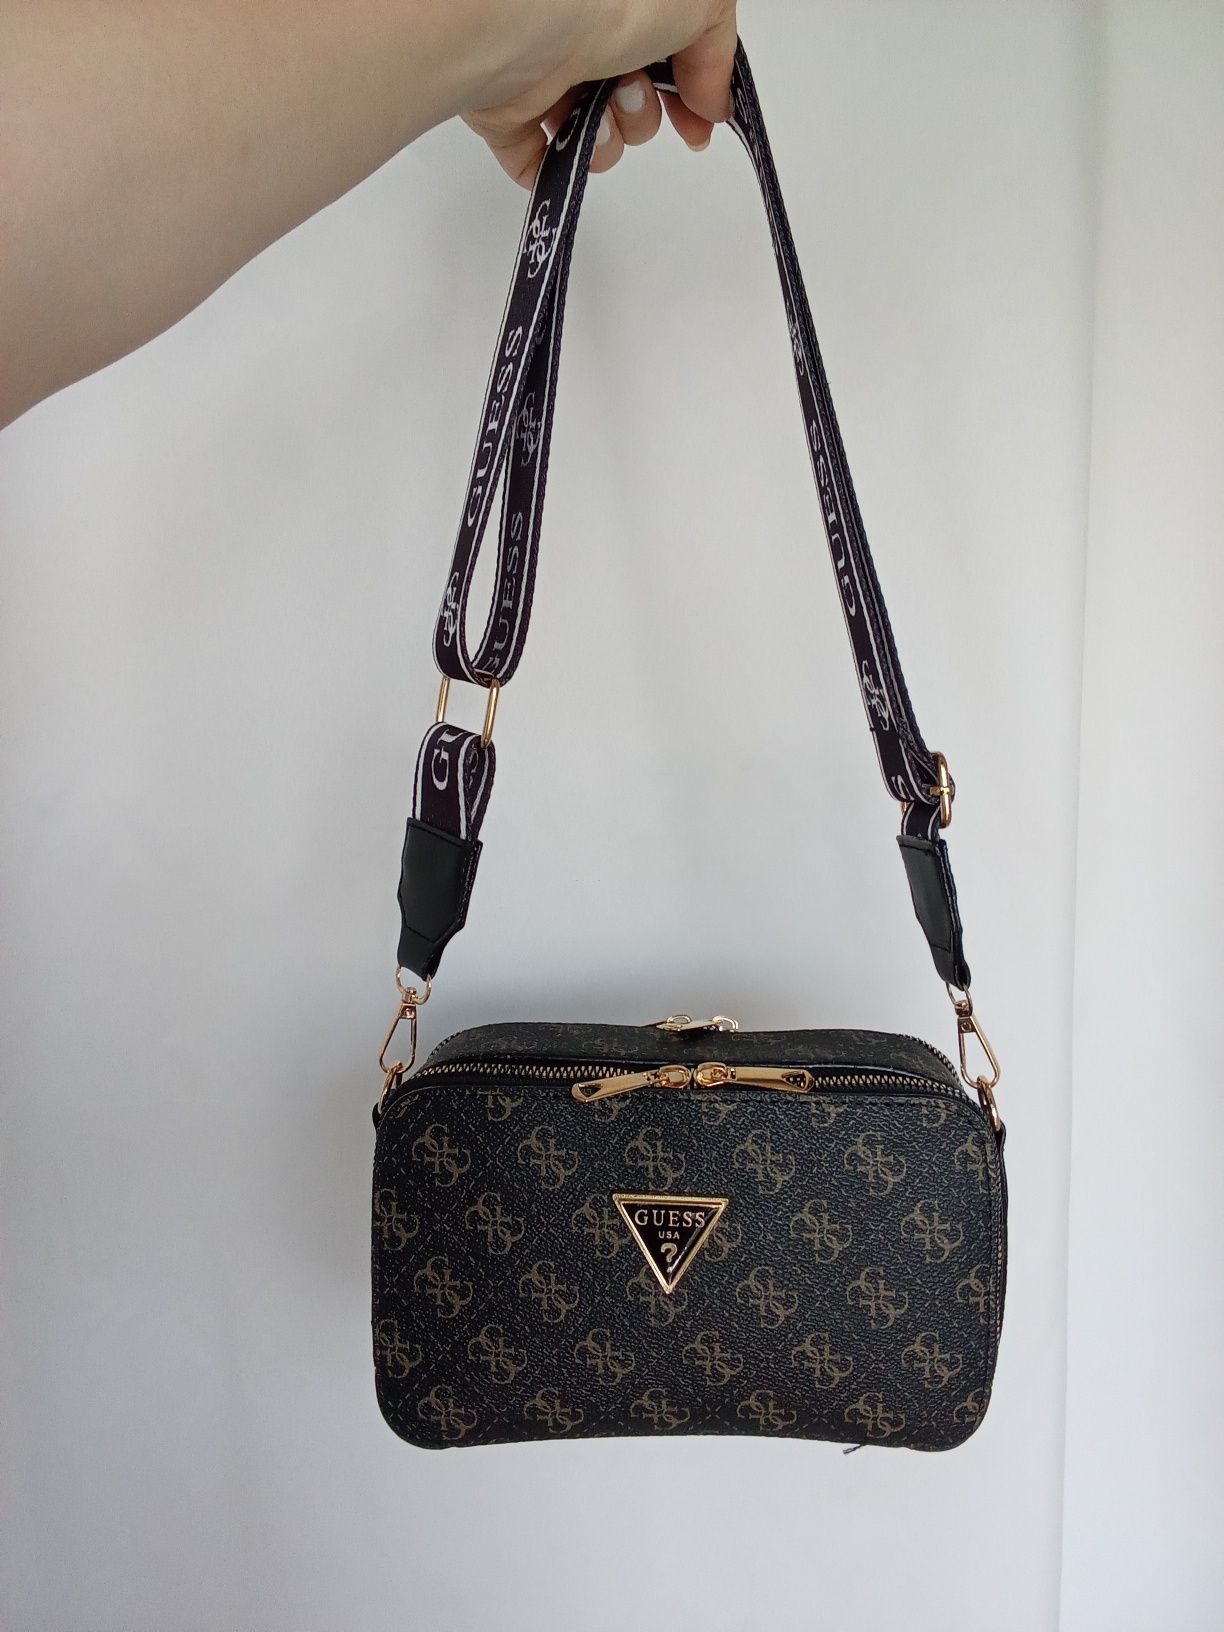 Louis Vuitton   Guess  Mark Jacob's чанта